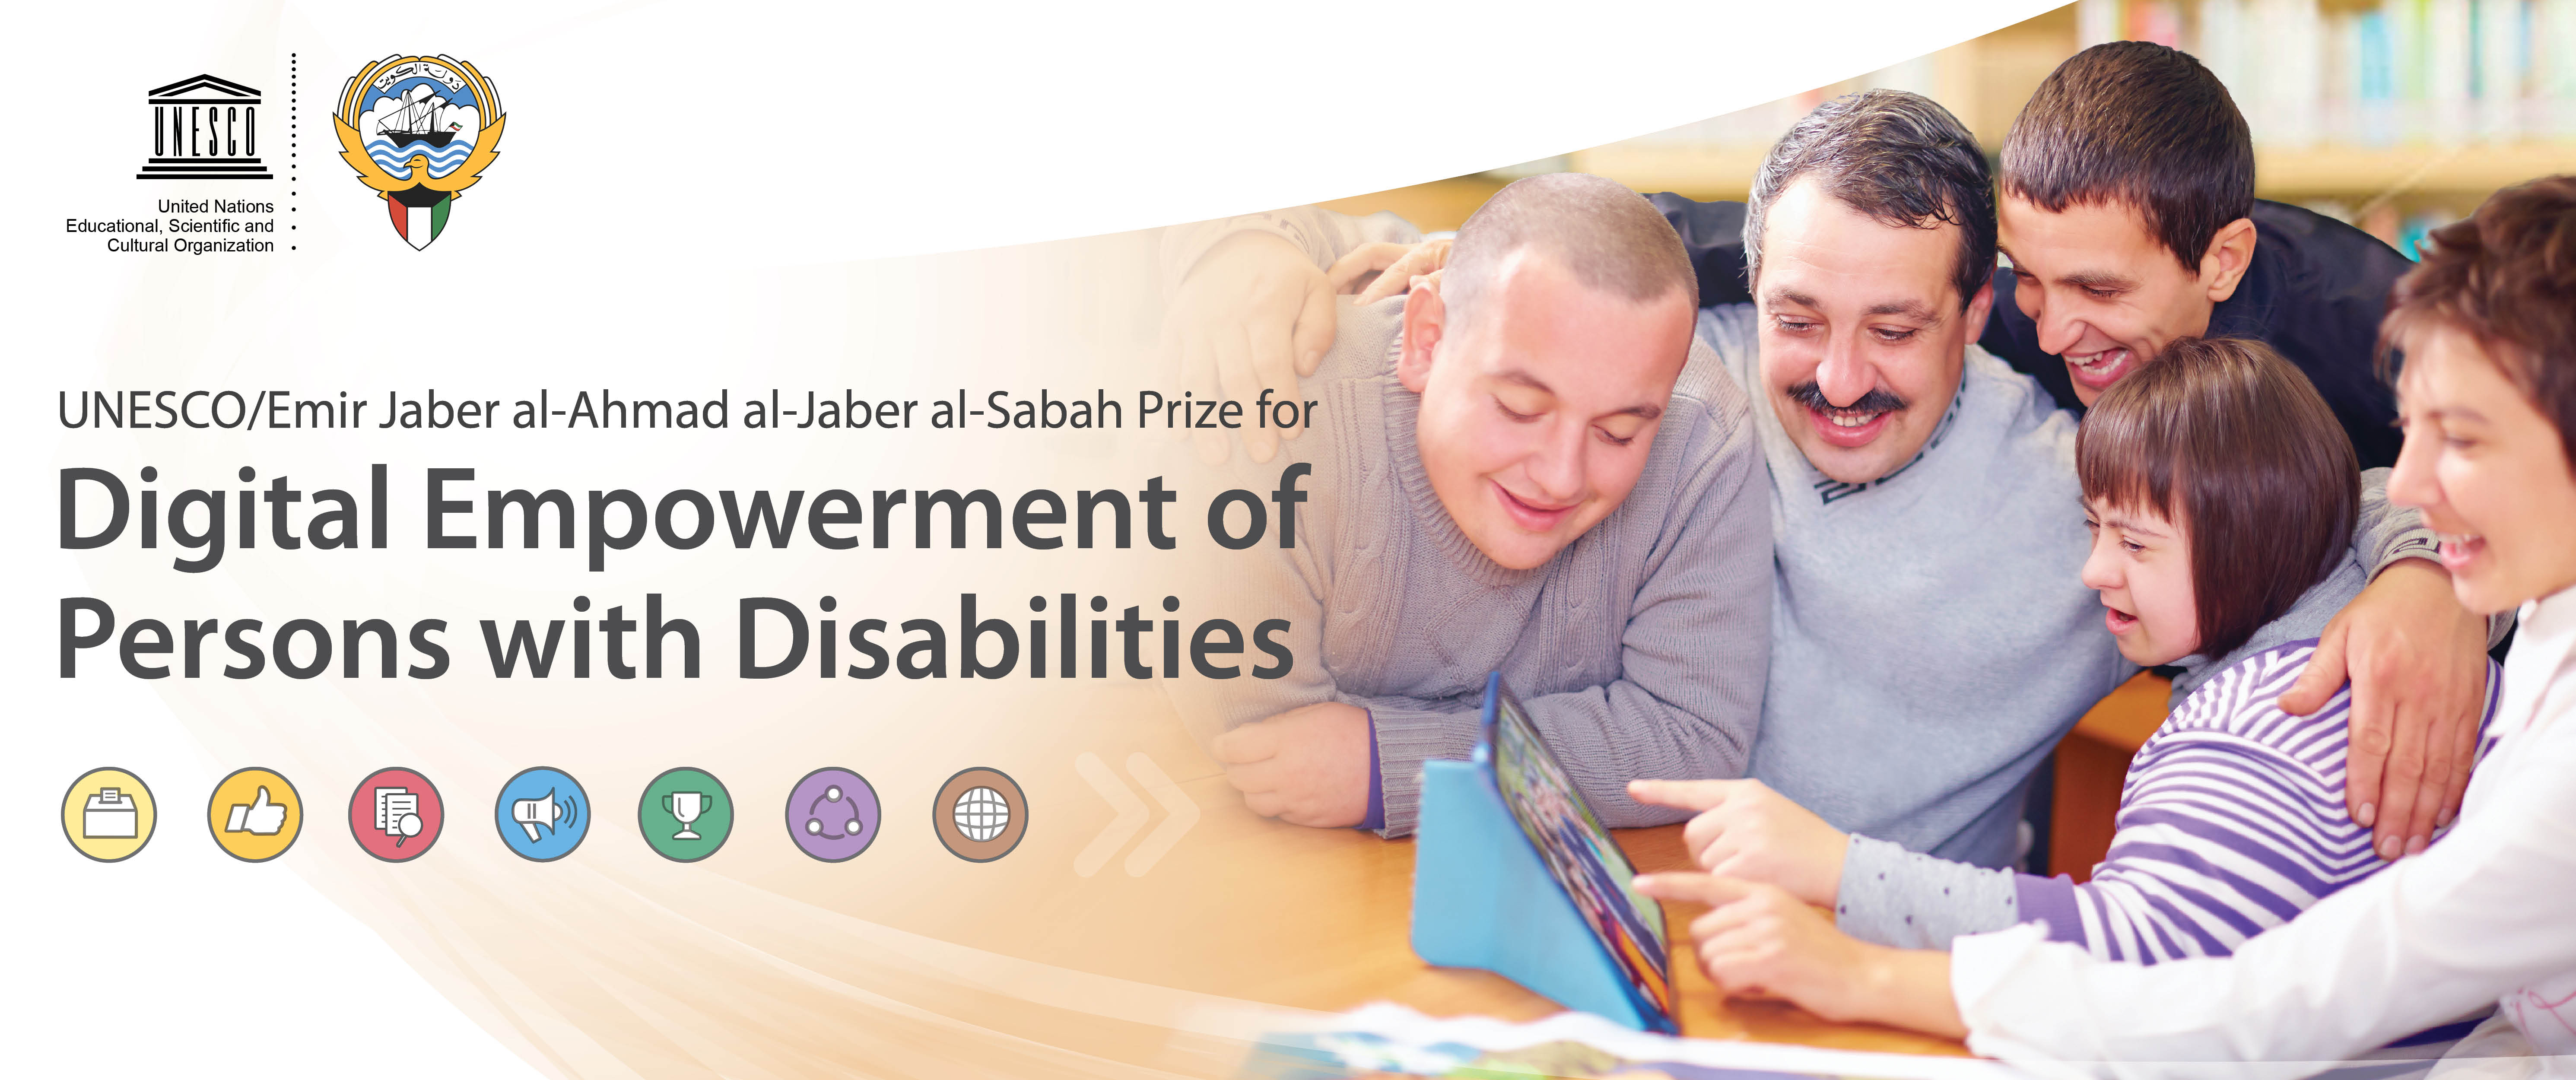 UNESCO/Emir Jaber al-Ahmad al-Jaber al-Sabah Prize for Digital Empowerment of Persons with Disabilities